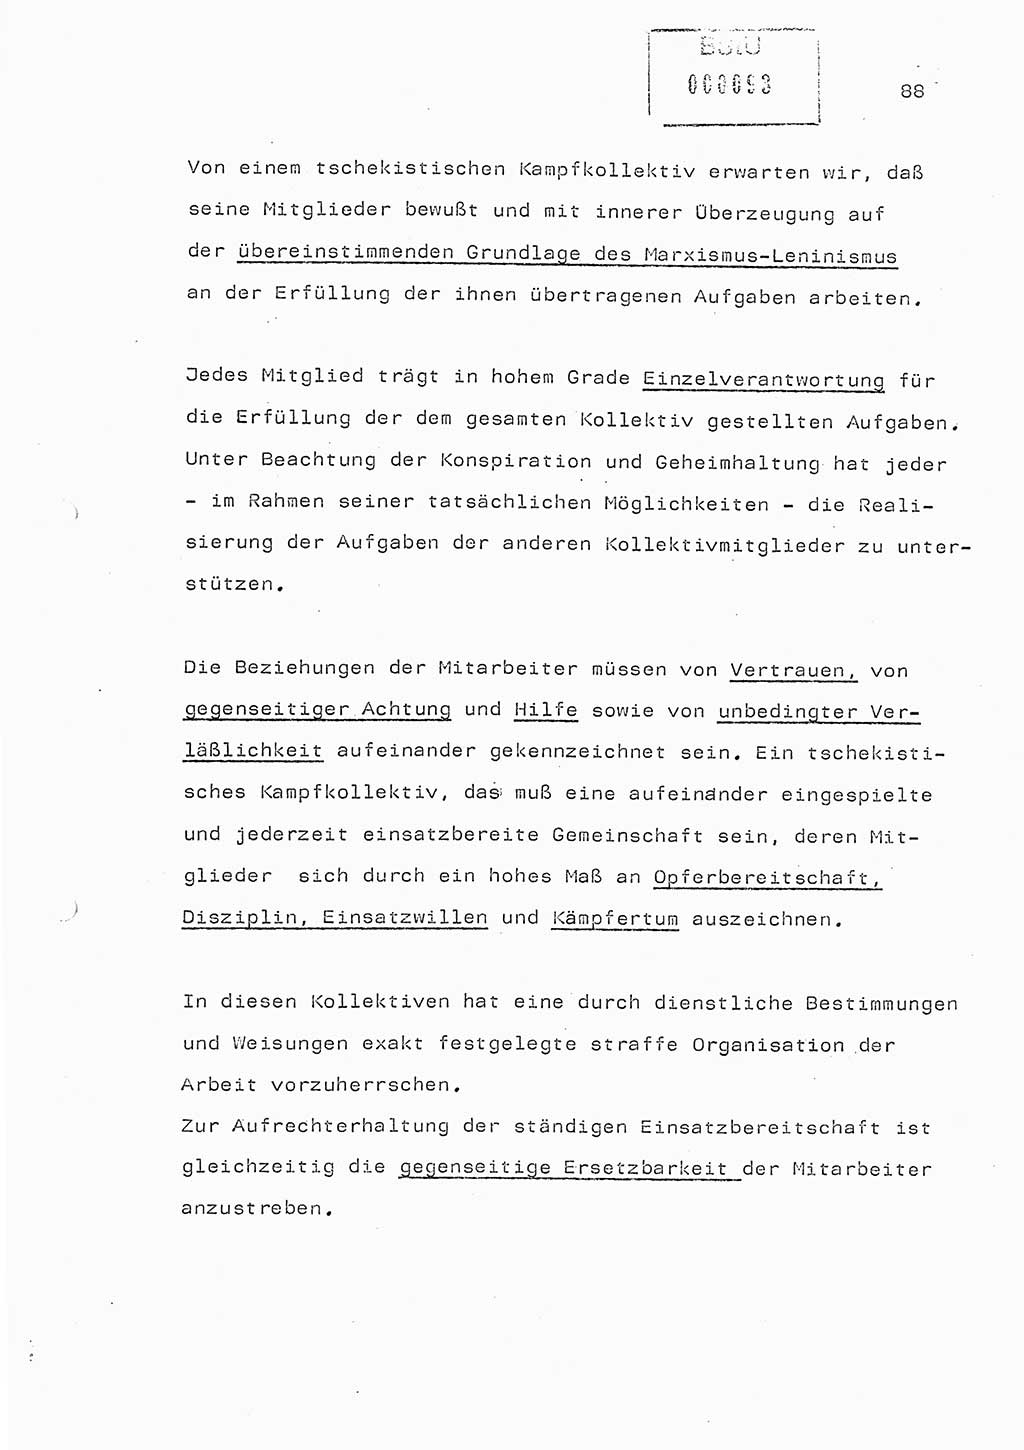 Referat (Generaloberst Erich Mielke) auf der Zentralen Dienstkonferenz am 24.5.1979 [Ministerium für Staatssicherheit (MfS), Deutsche Demokratische Republik (DDR), Der Minister], Berlin 1979, Seite 88 (Ref. DK DDR MfS Min. /79 1979, S. 88)